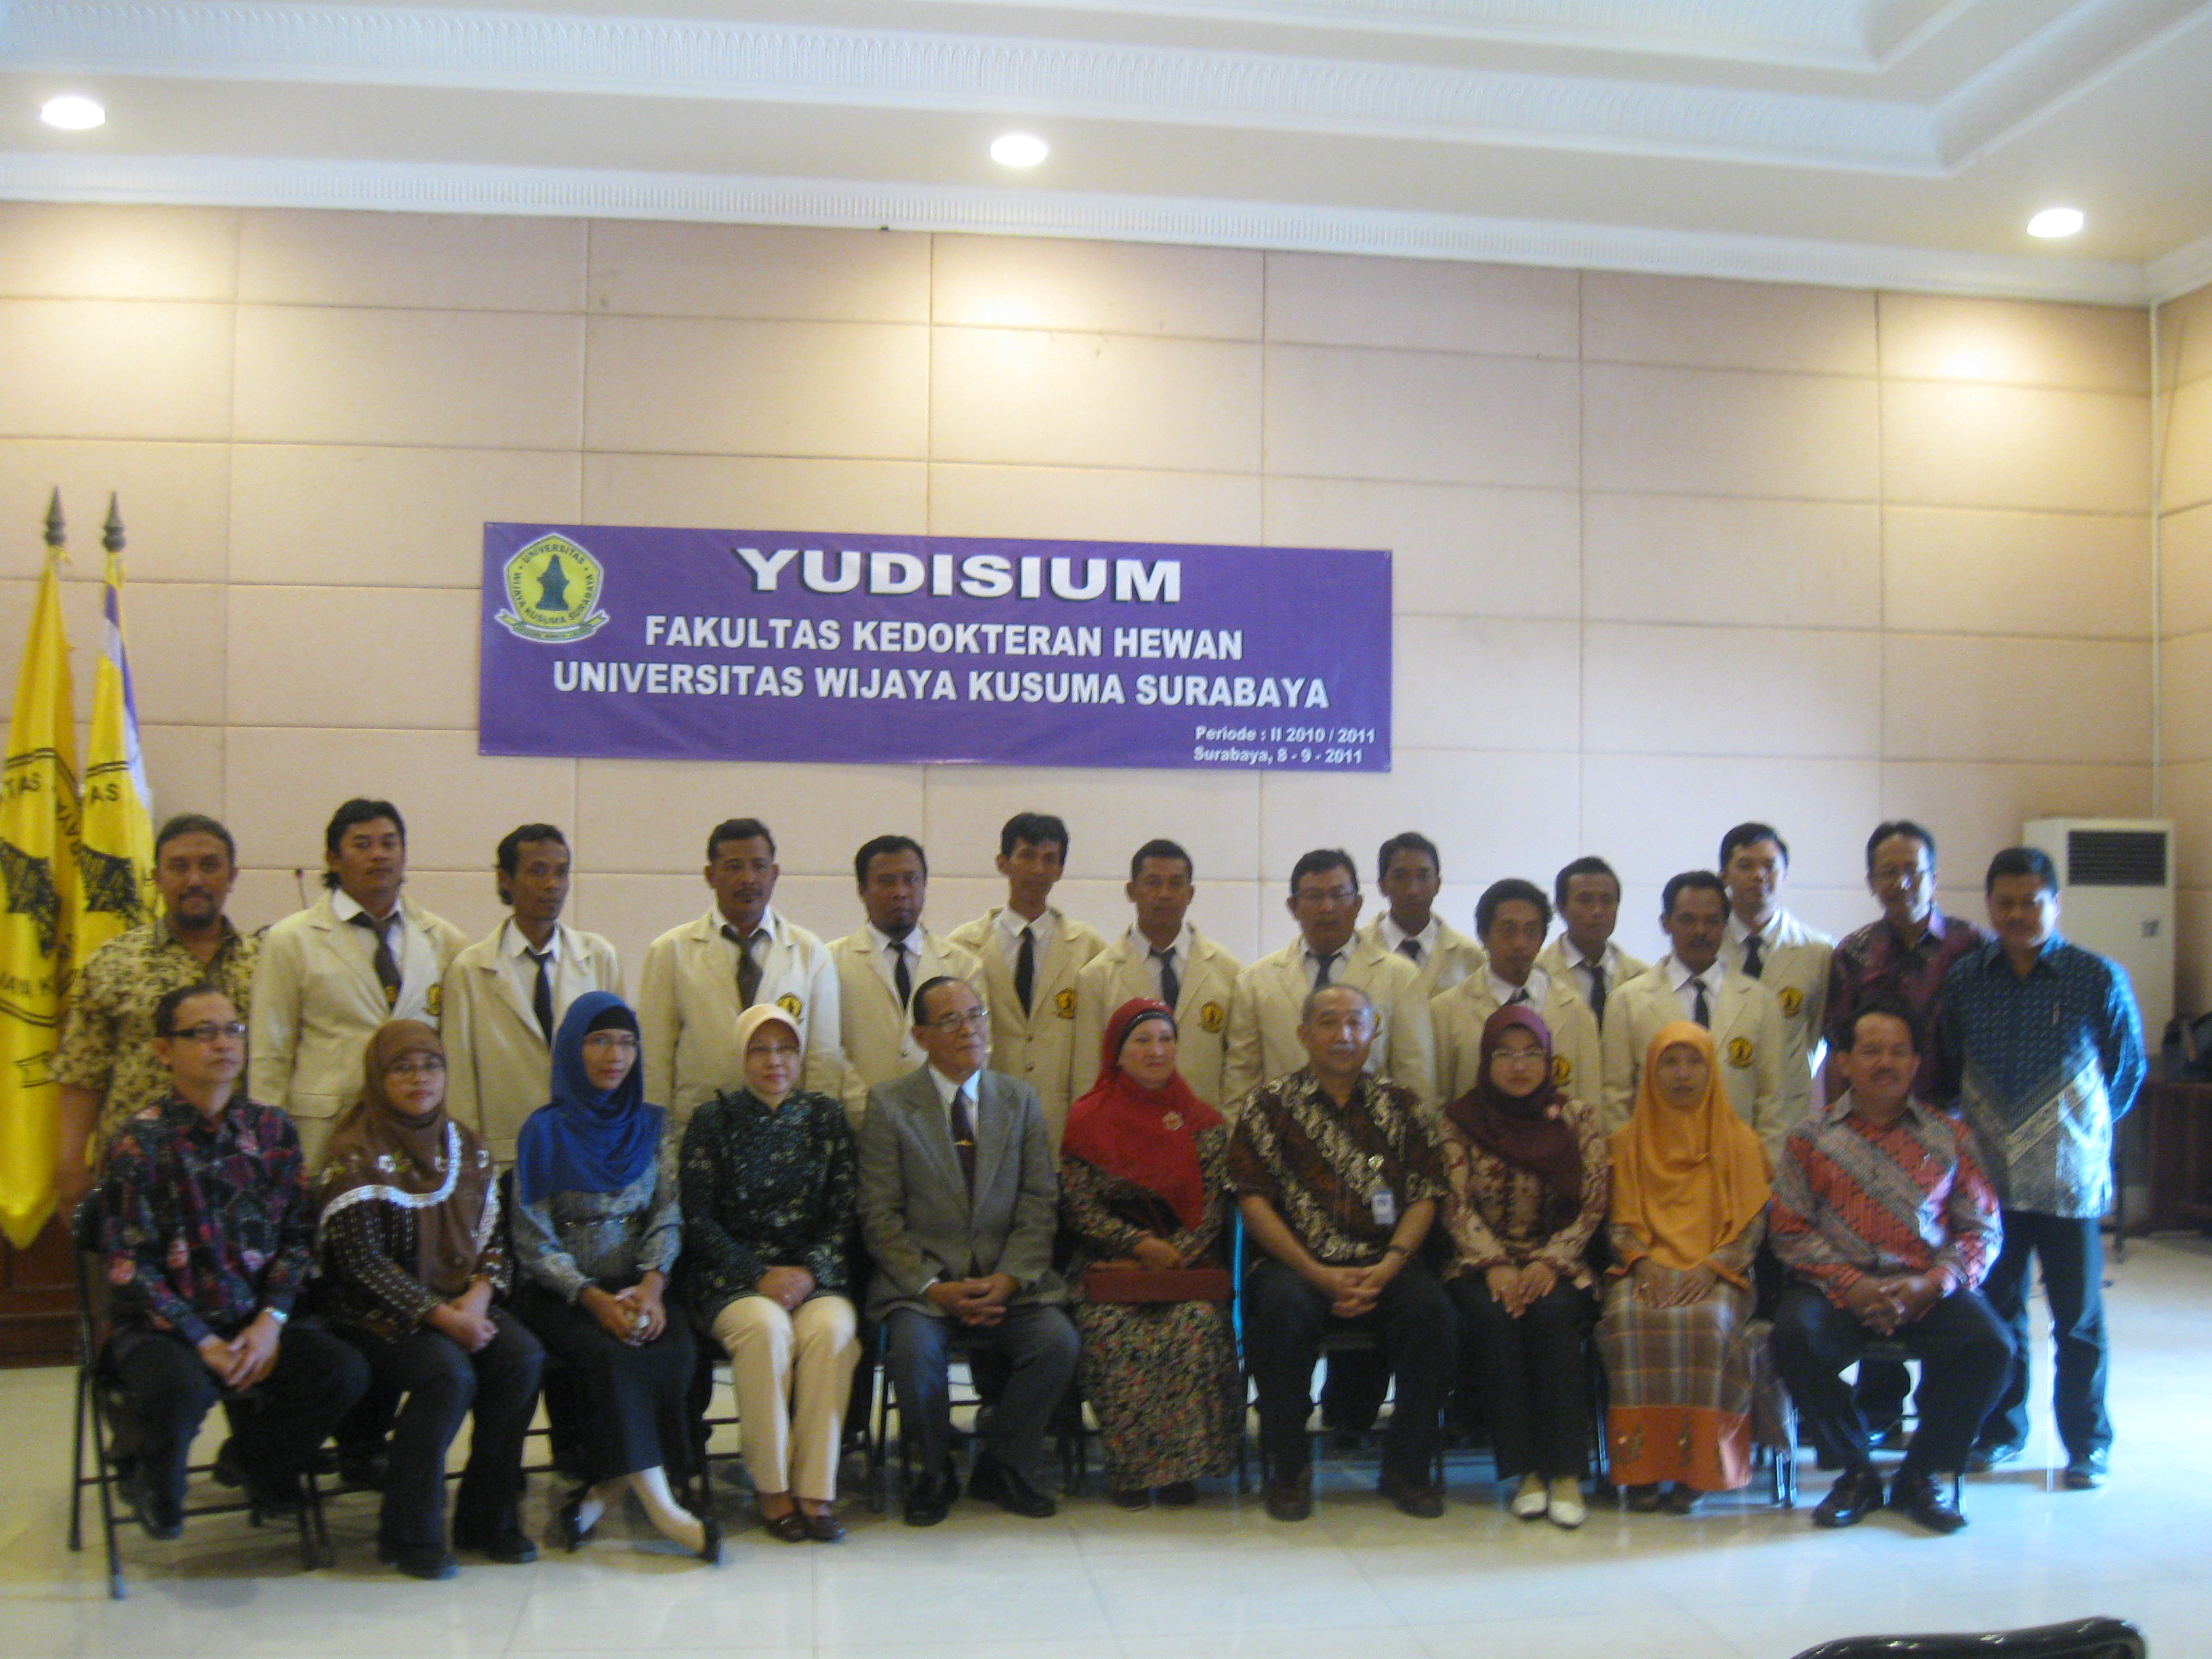 Surabaya – Sebanyak 19 mahasiswa Fakultas Kedokteran Hewan